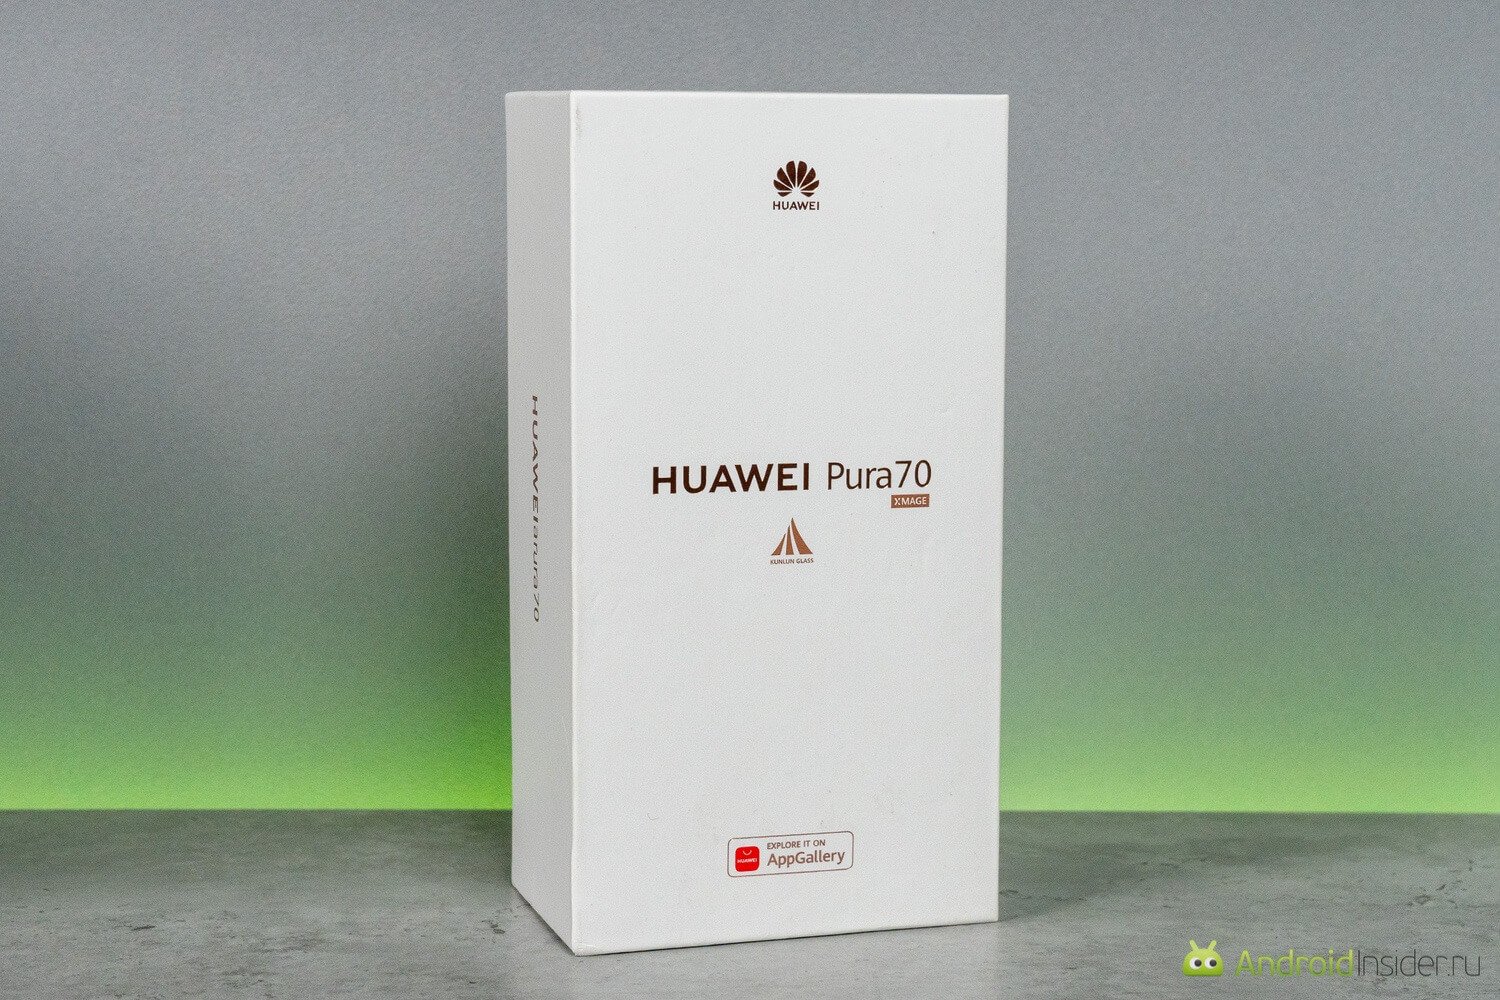 Обзор HUAWEI Pura 70. Сначала, нас как всегда встречает привычная коробка в стилистике бренда. Фото.